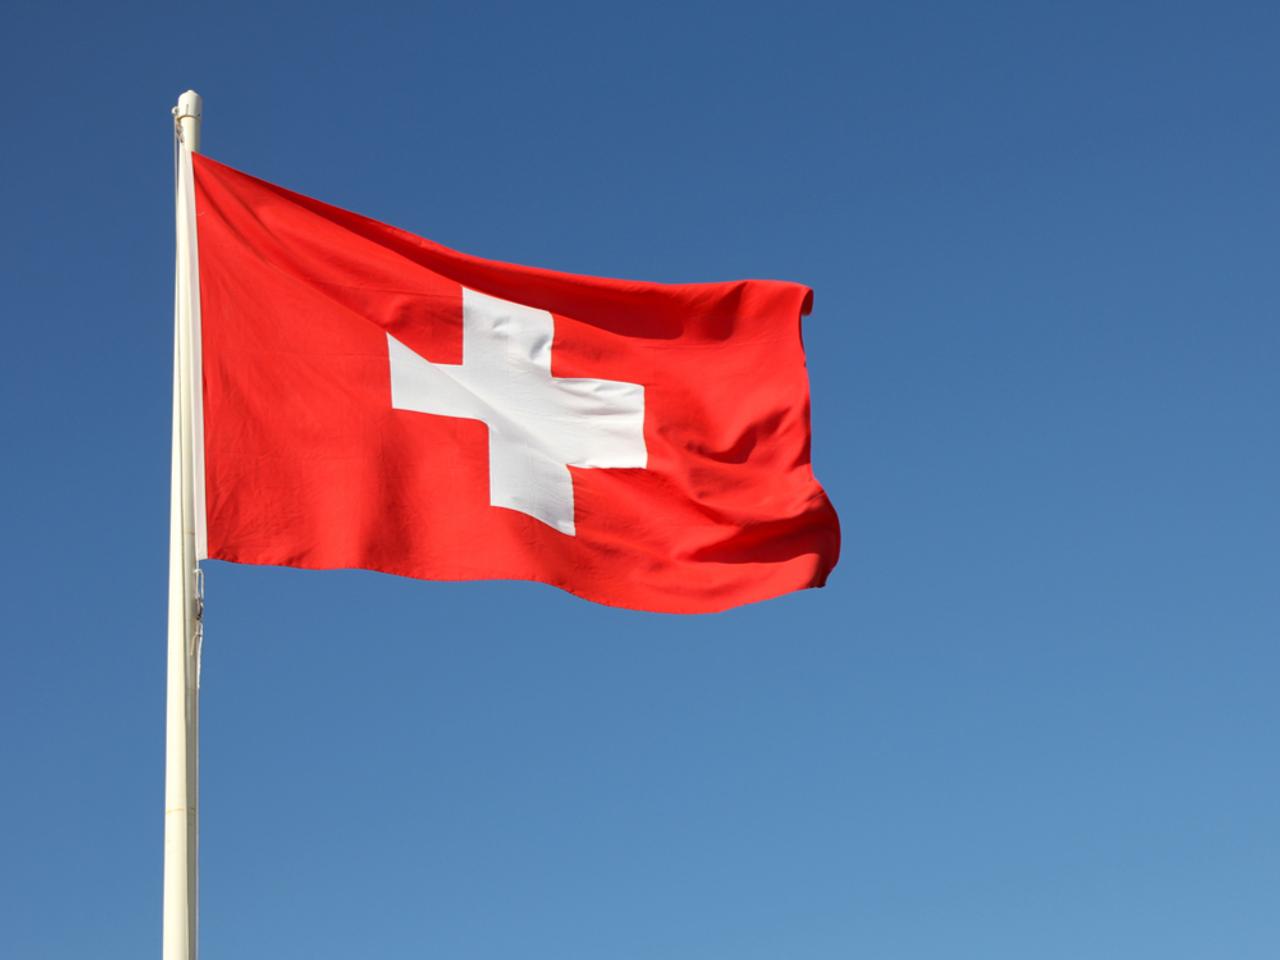 ニューヨーク証券取引所、Spotify上場を祝してスイスの国旗を掲げてしまう（※Spotifyはスウェーデンの会社です）